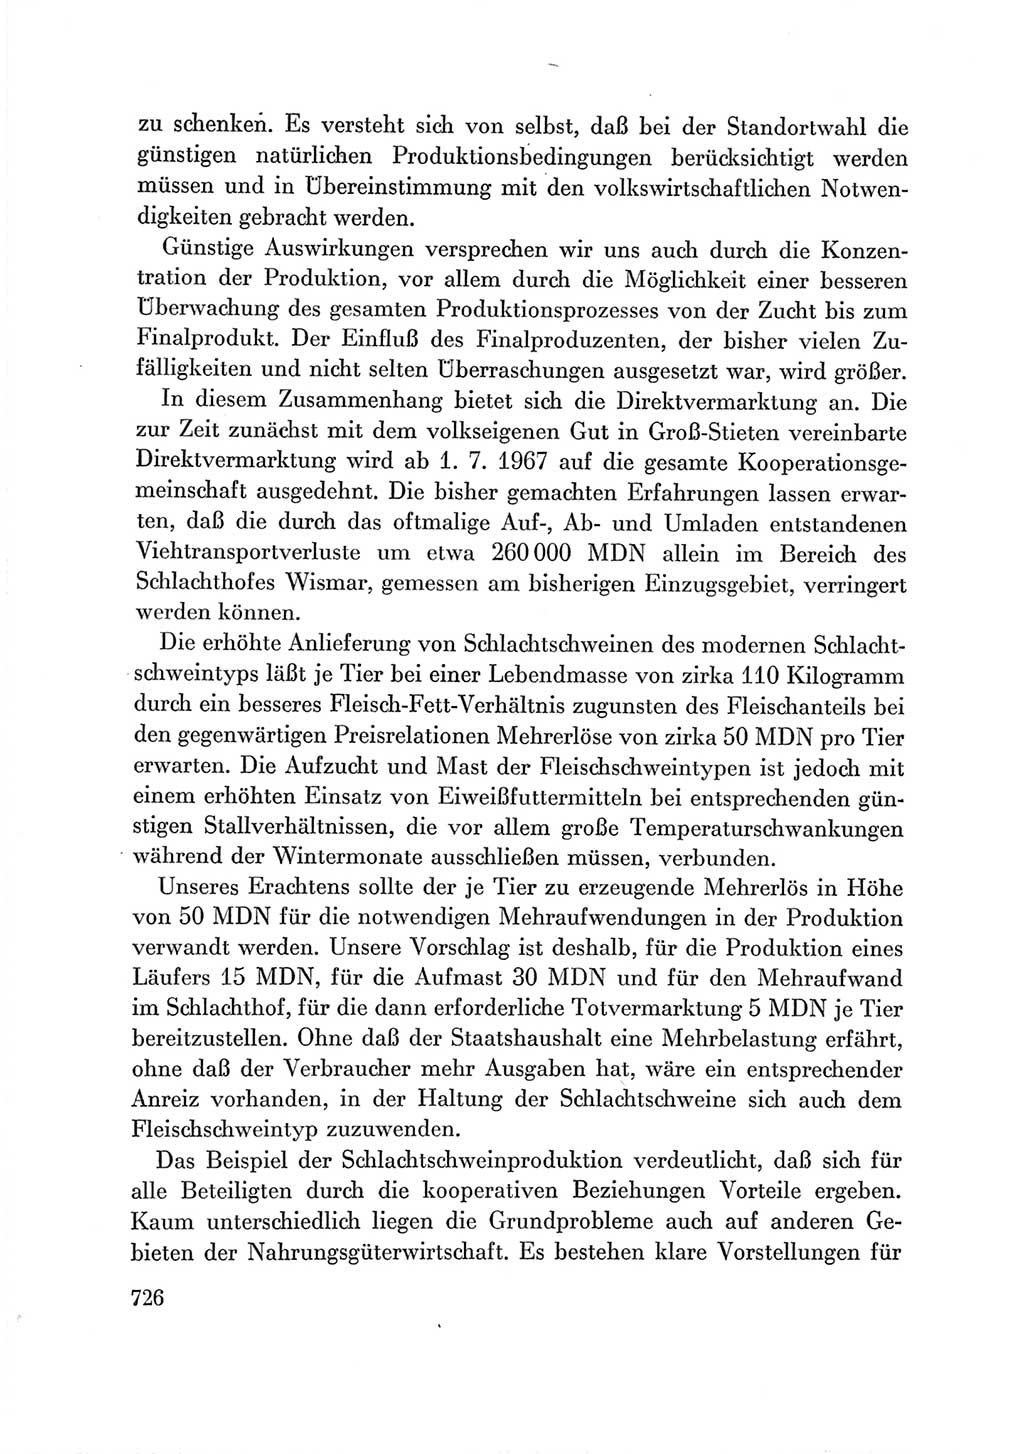 Protokoll der Verhandlungen des Ⅶ. Parteitages der Sozialistischen Einheitspartei Deutschlands (SED) [Deutsche Demokratische Republik (DDR)] 1967, Band Ⅲ, Seite 726 (Prot. Verh. Ⅶ. PT SED DDR 1967, Bd. Ⅲ, S. 726)